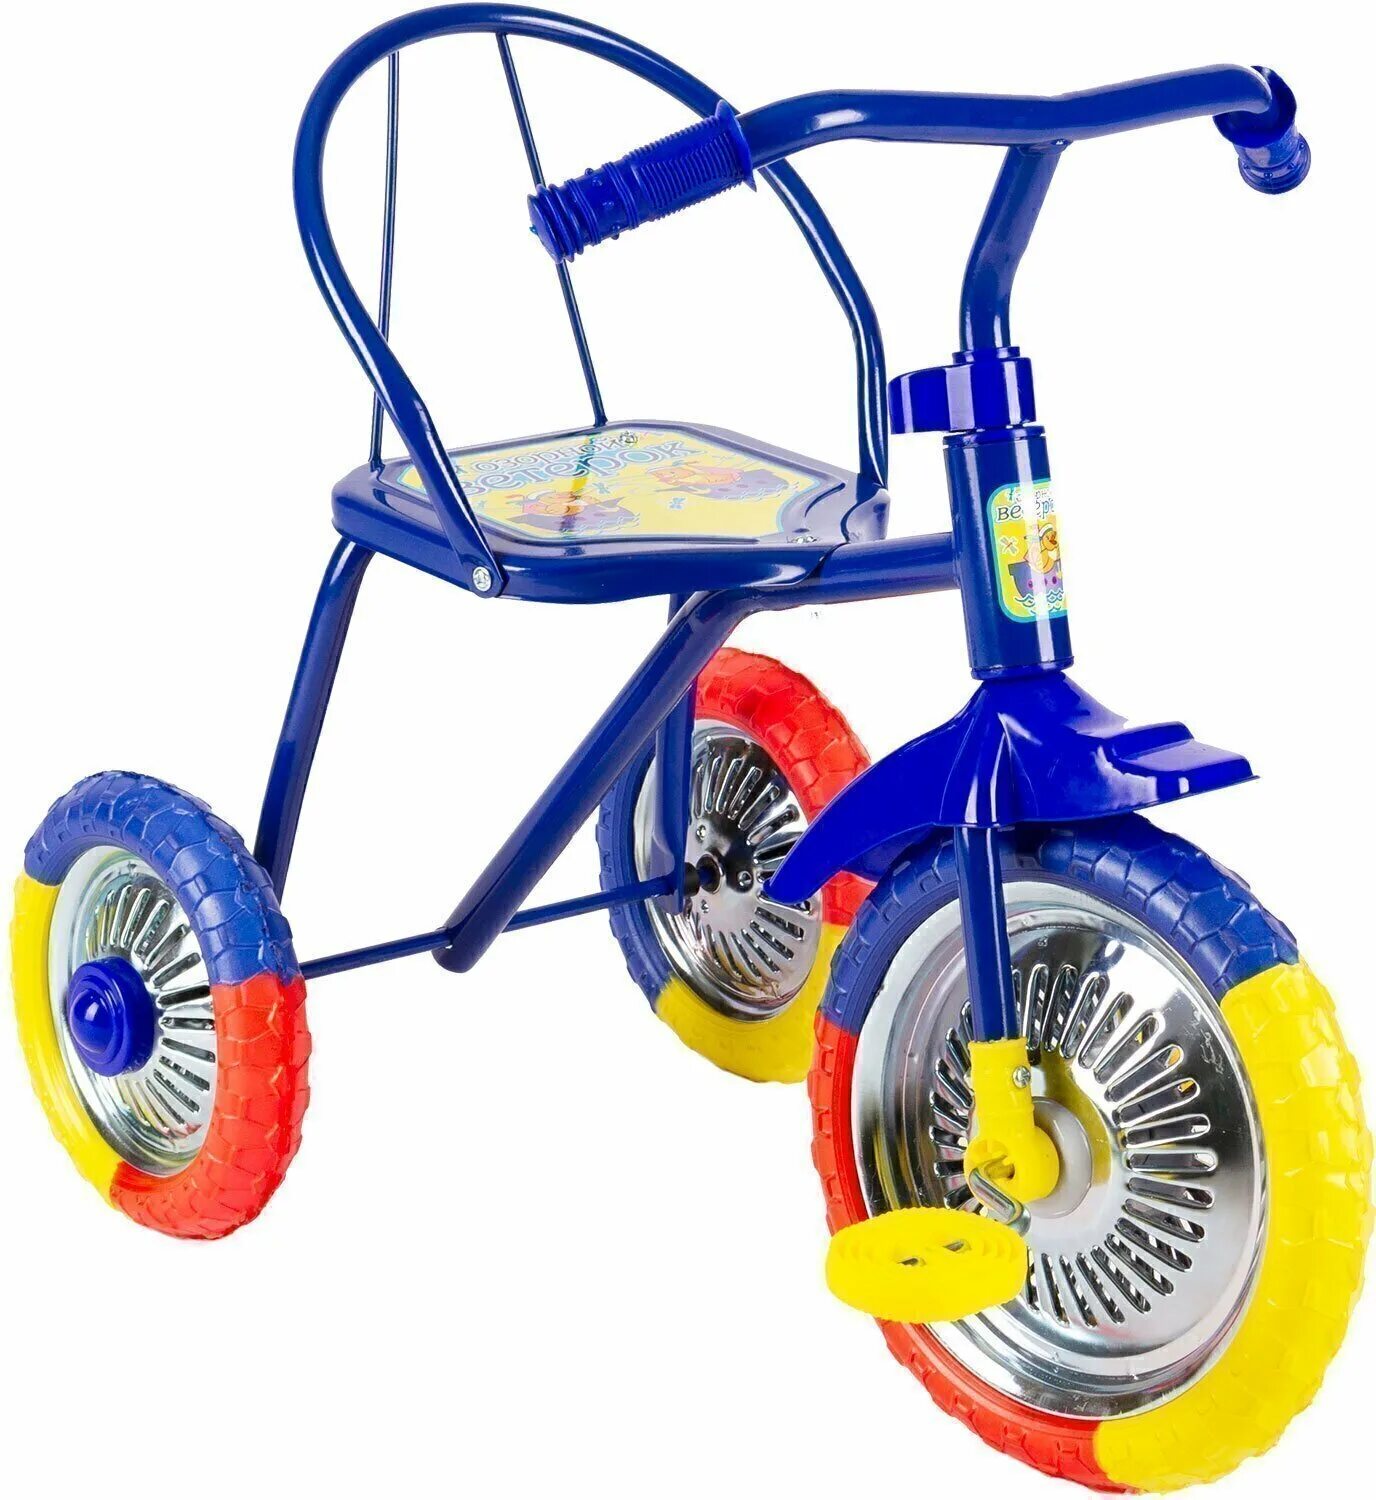 Трехколесные велосипеды ростов. Велосипед трёхколёсный детский lh702. Велосипед 3-х озорной ветерок GV-b3-2mx цвета микс. Велосипед озорной ветерок GV-b3-2mx. Трехколесный велосипед озорной ветерок 10" GV-b3-2mx, желтый.